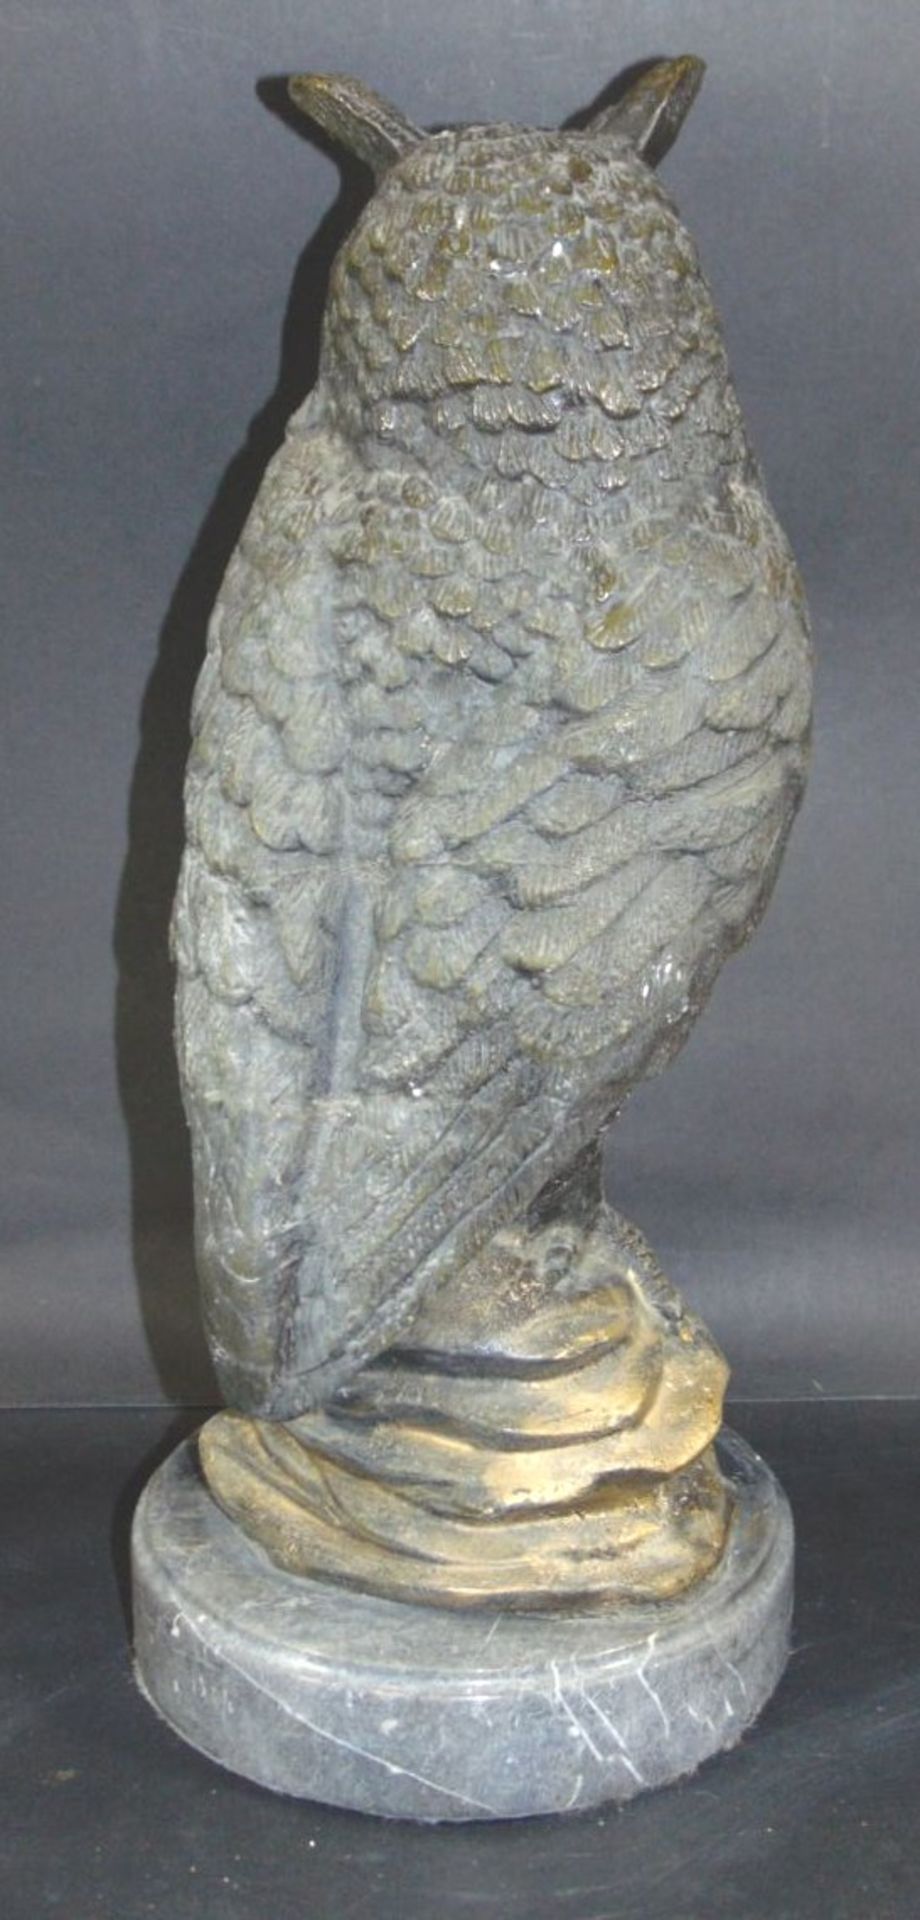 grosse Bronze-Eule auf Marmorsockel, H-42 cm, 9 kg- - -22.61 % buyer's premium on the hammer - Bild 3 aus 5